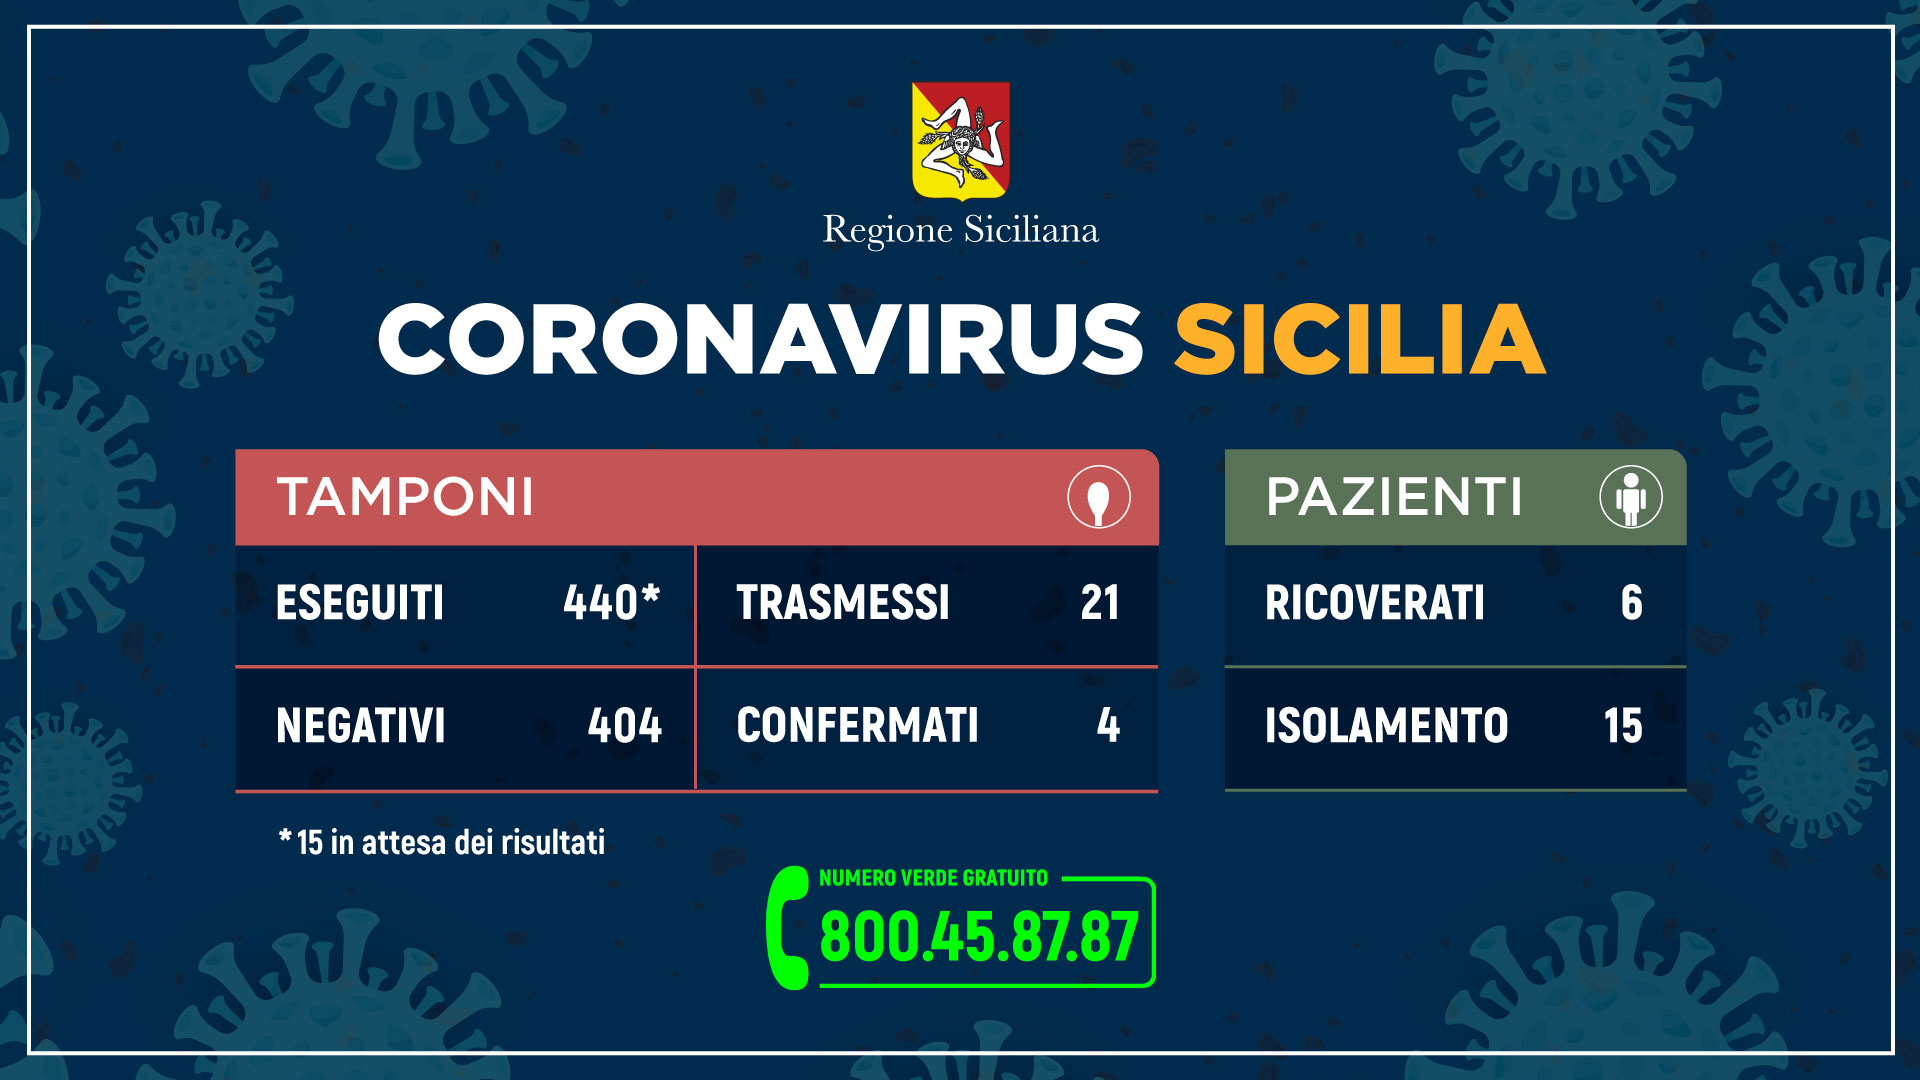 dati della regione siciliana sul numero di tamponi risultati positivi al coronavirus in Sicilia, aggiornati alle 12.00 del 5 marzo 2020